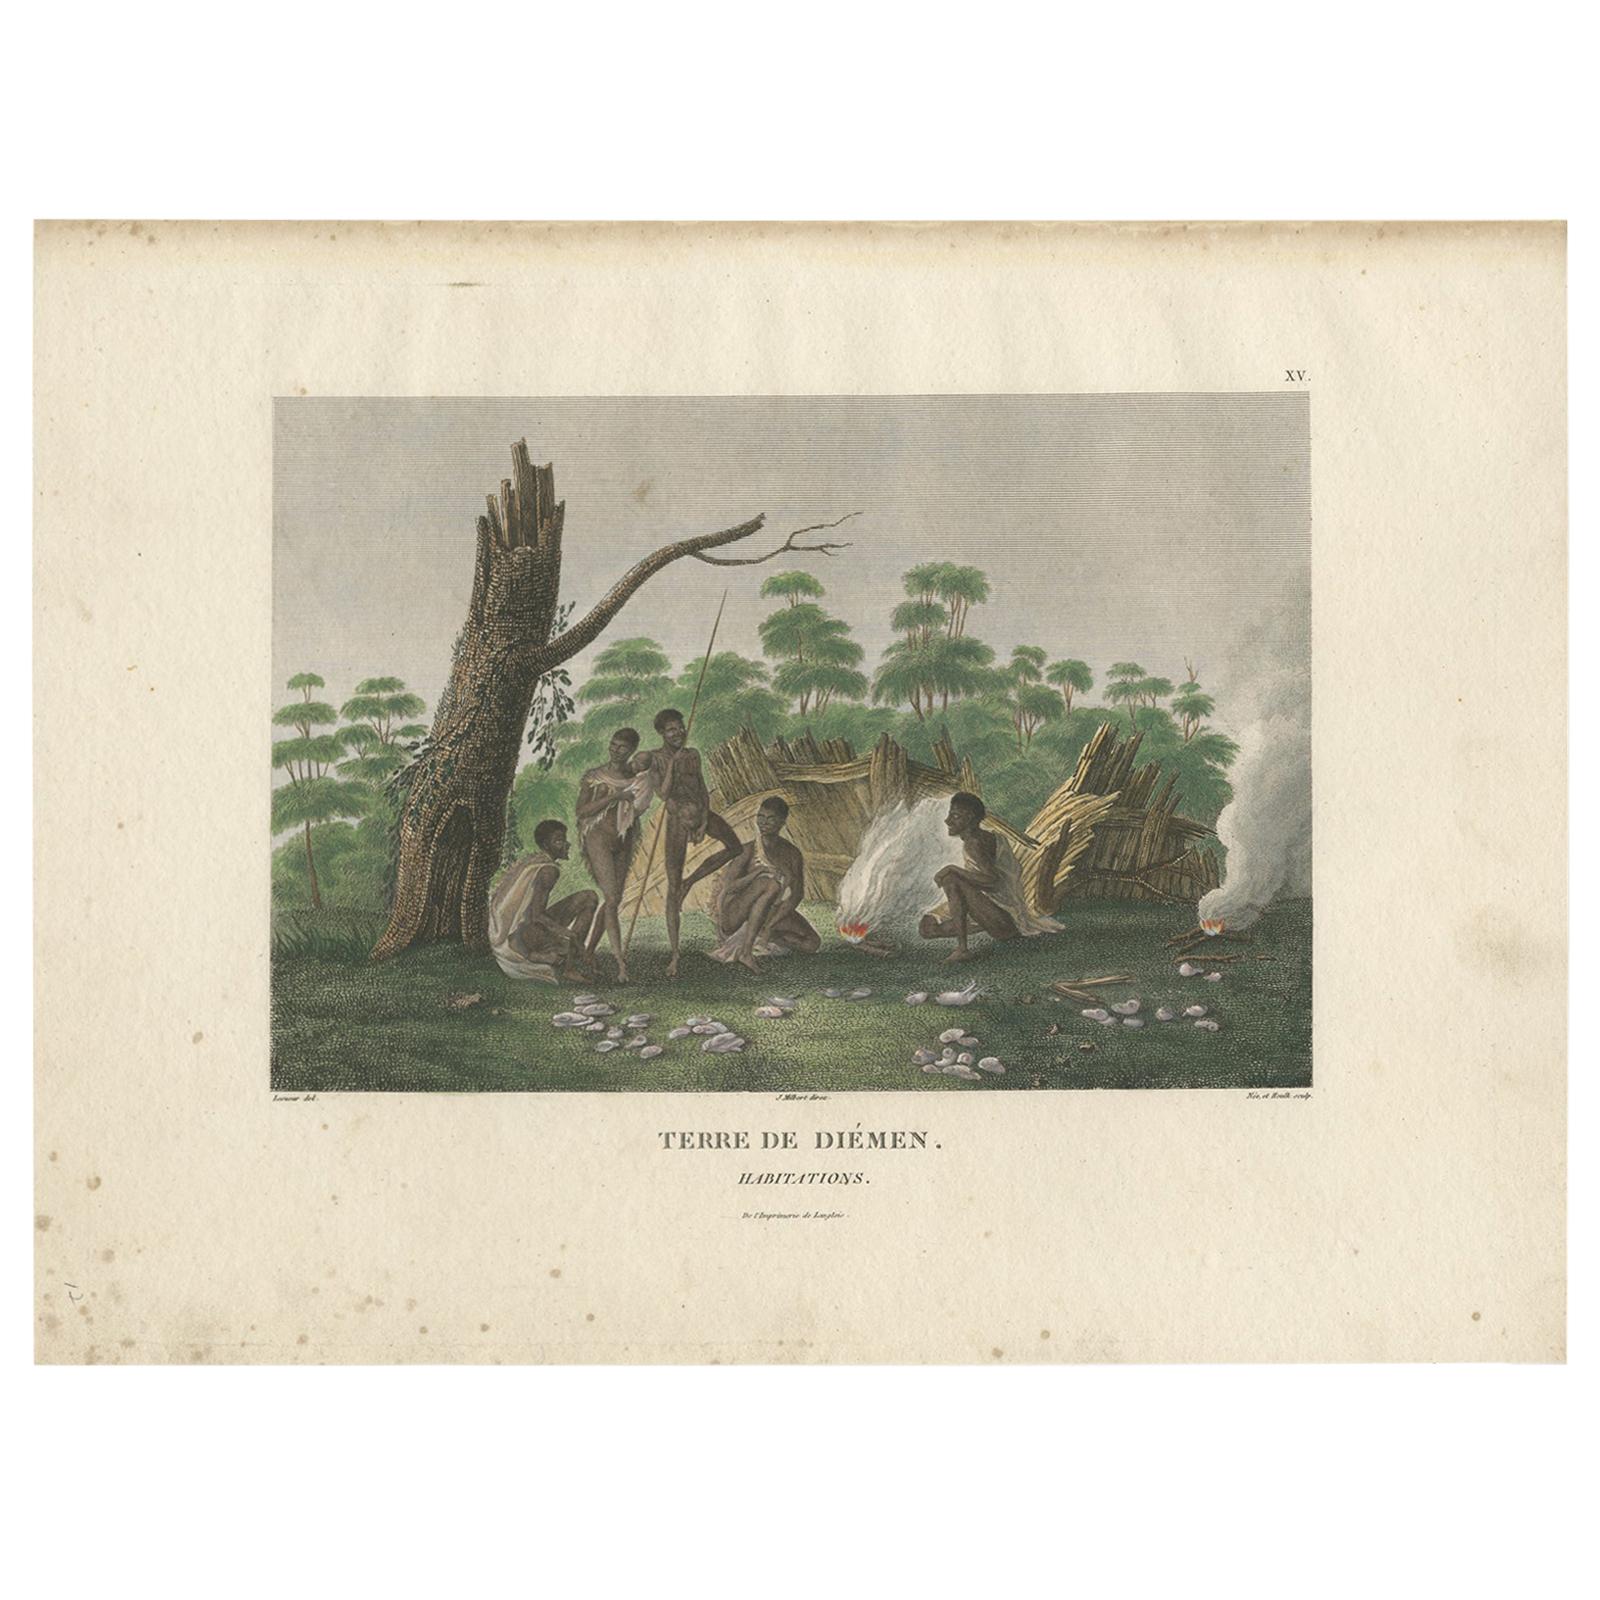 Antiker Druck der Ureinwohner von Van Diemen's Land von Peron, um 1810